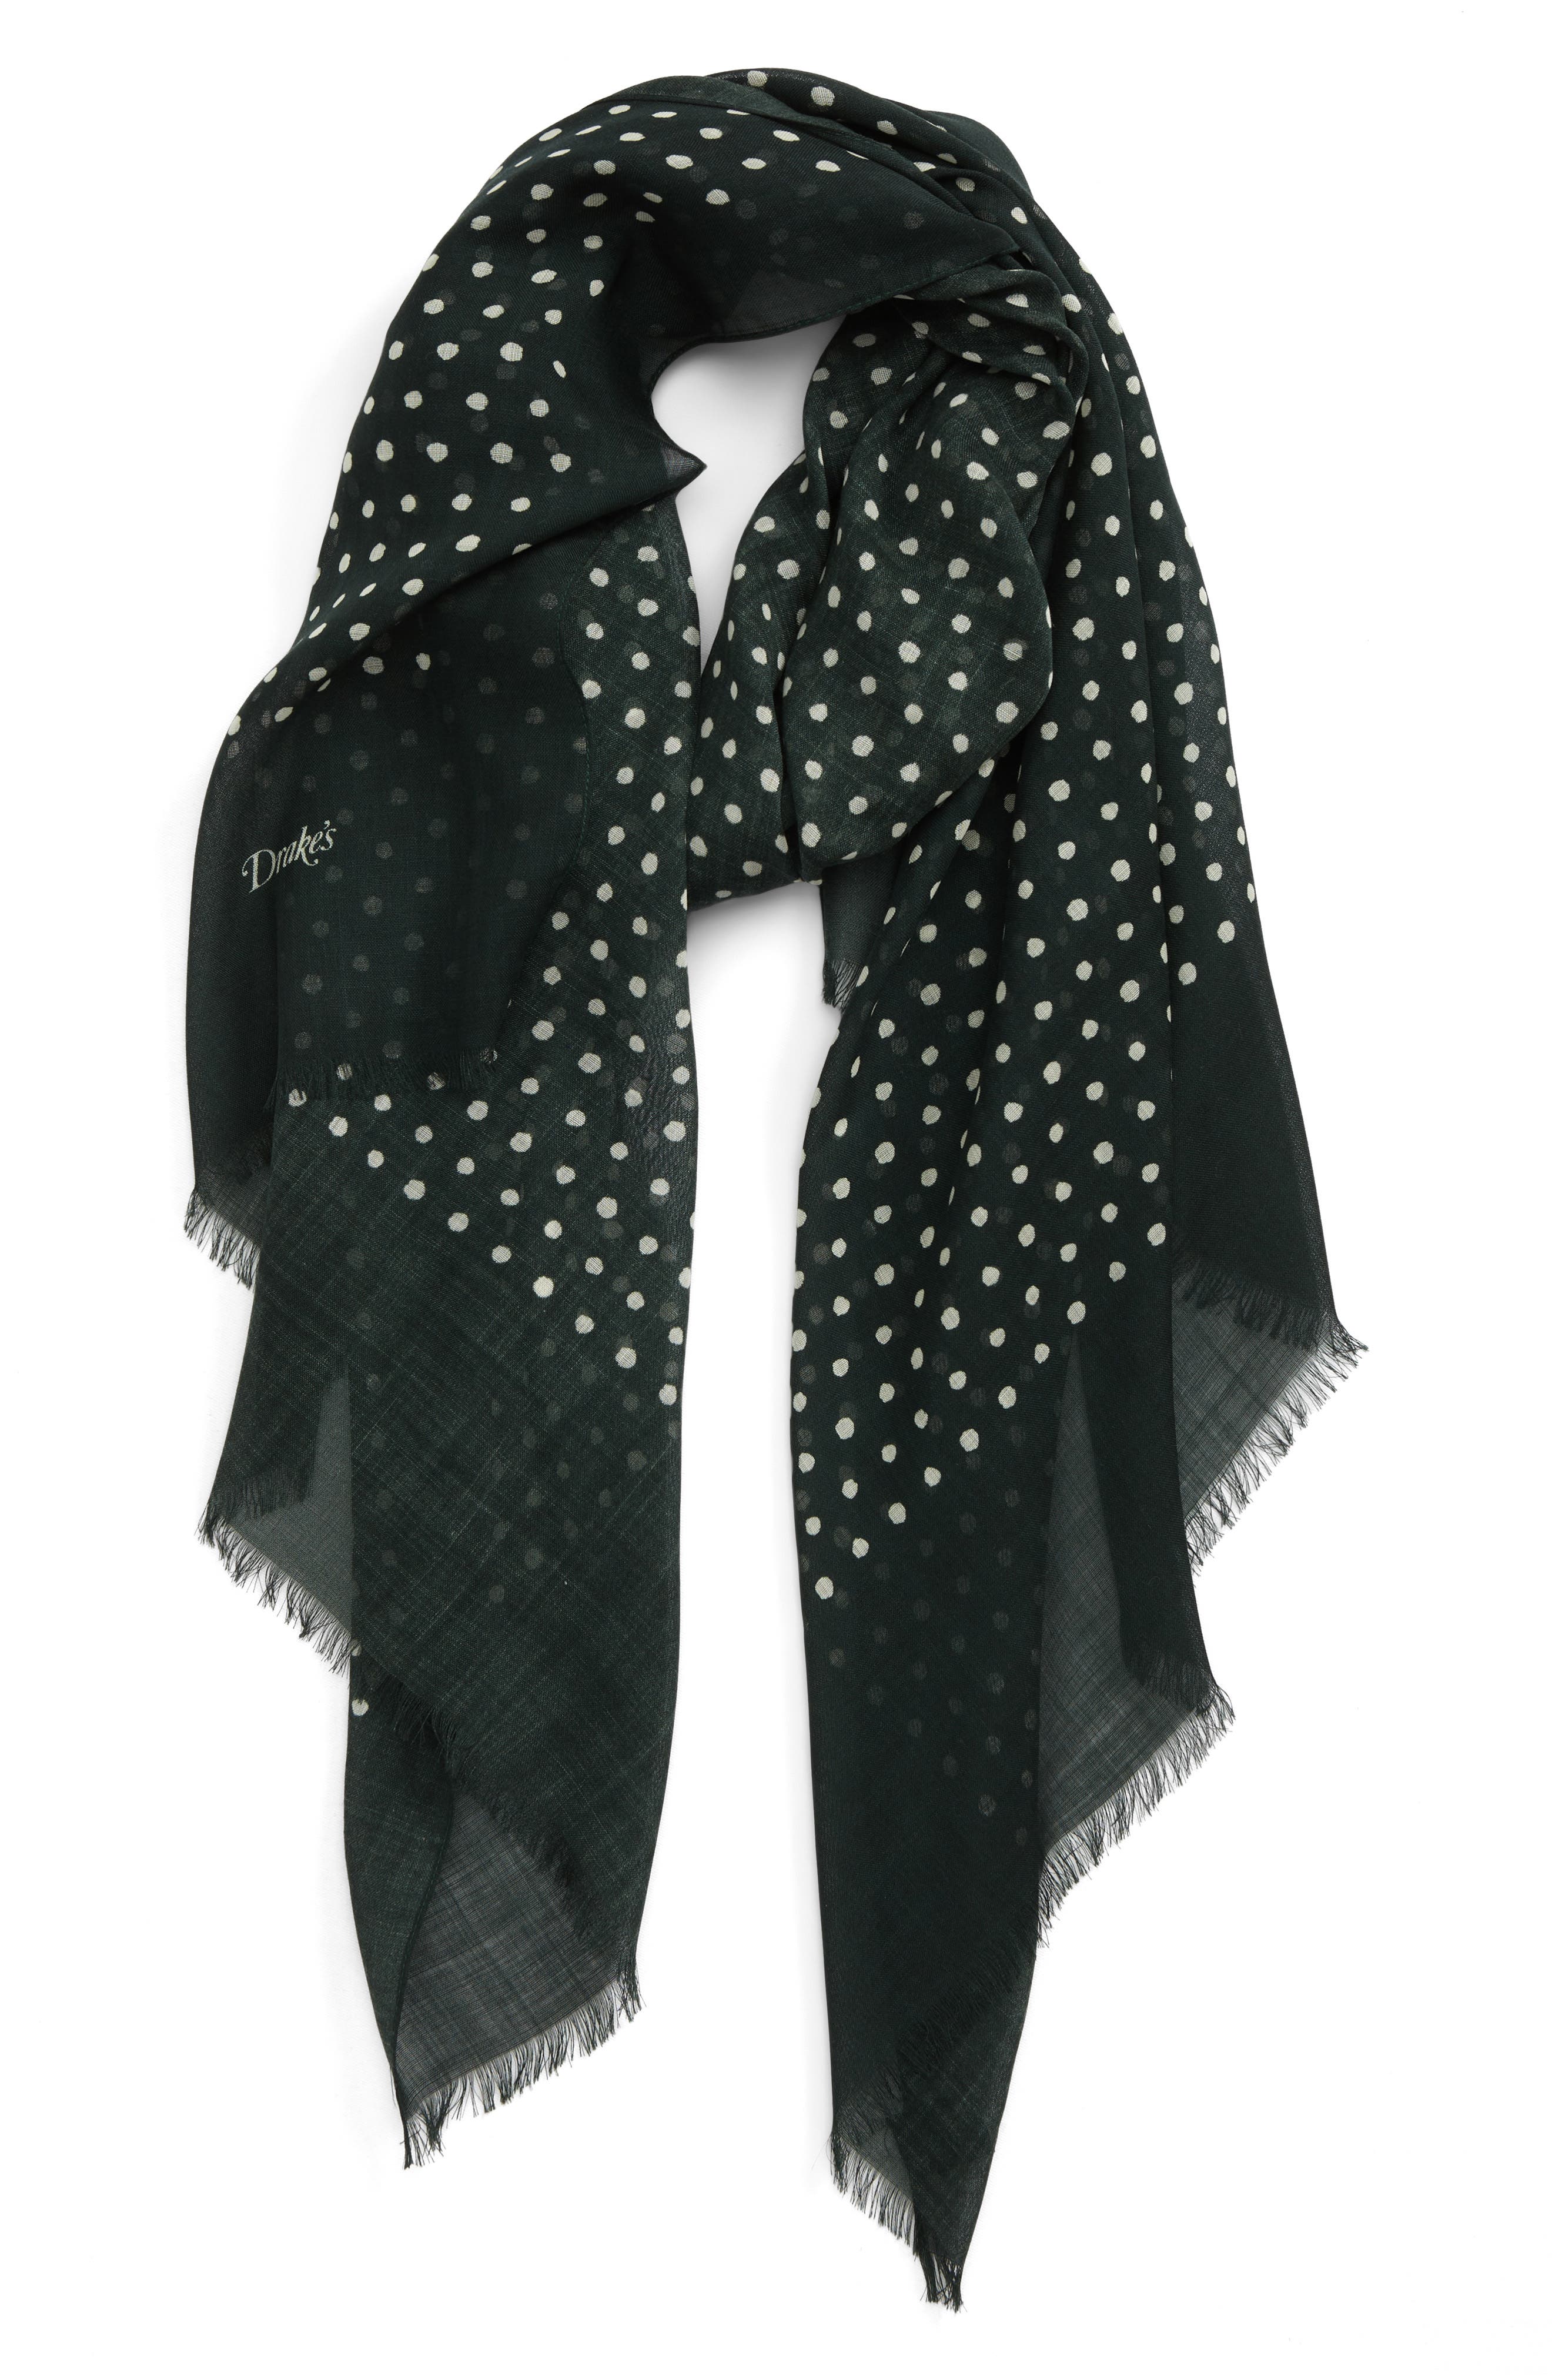 Ladies luxury wool shawl wool scarf in grey dark shades polka dot heavy scarf 